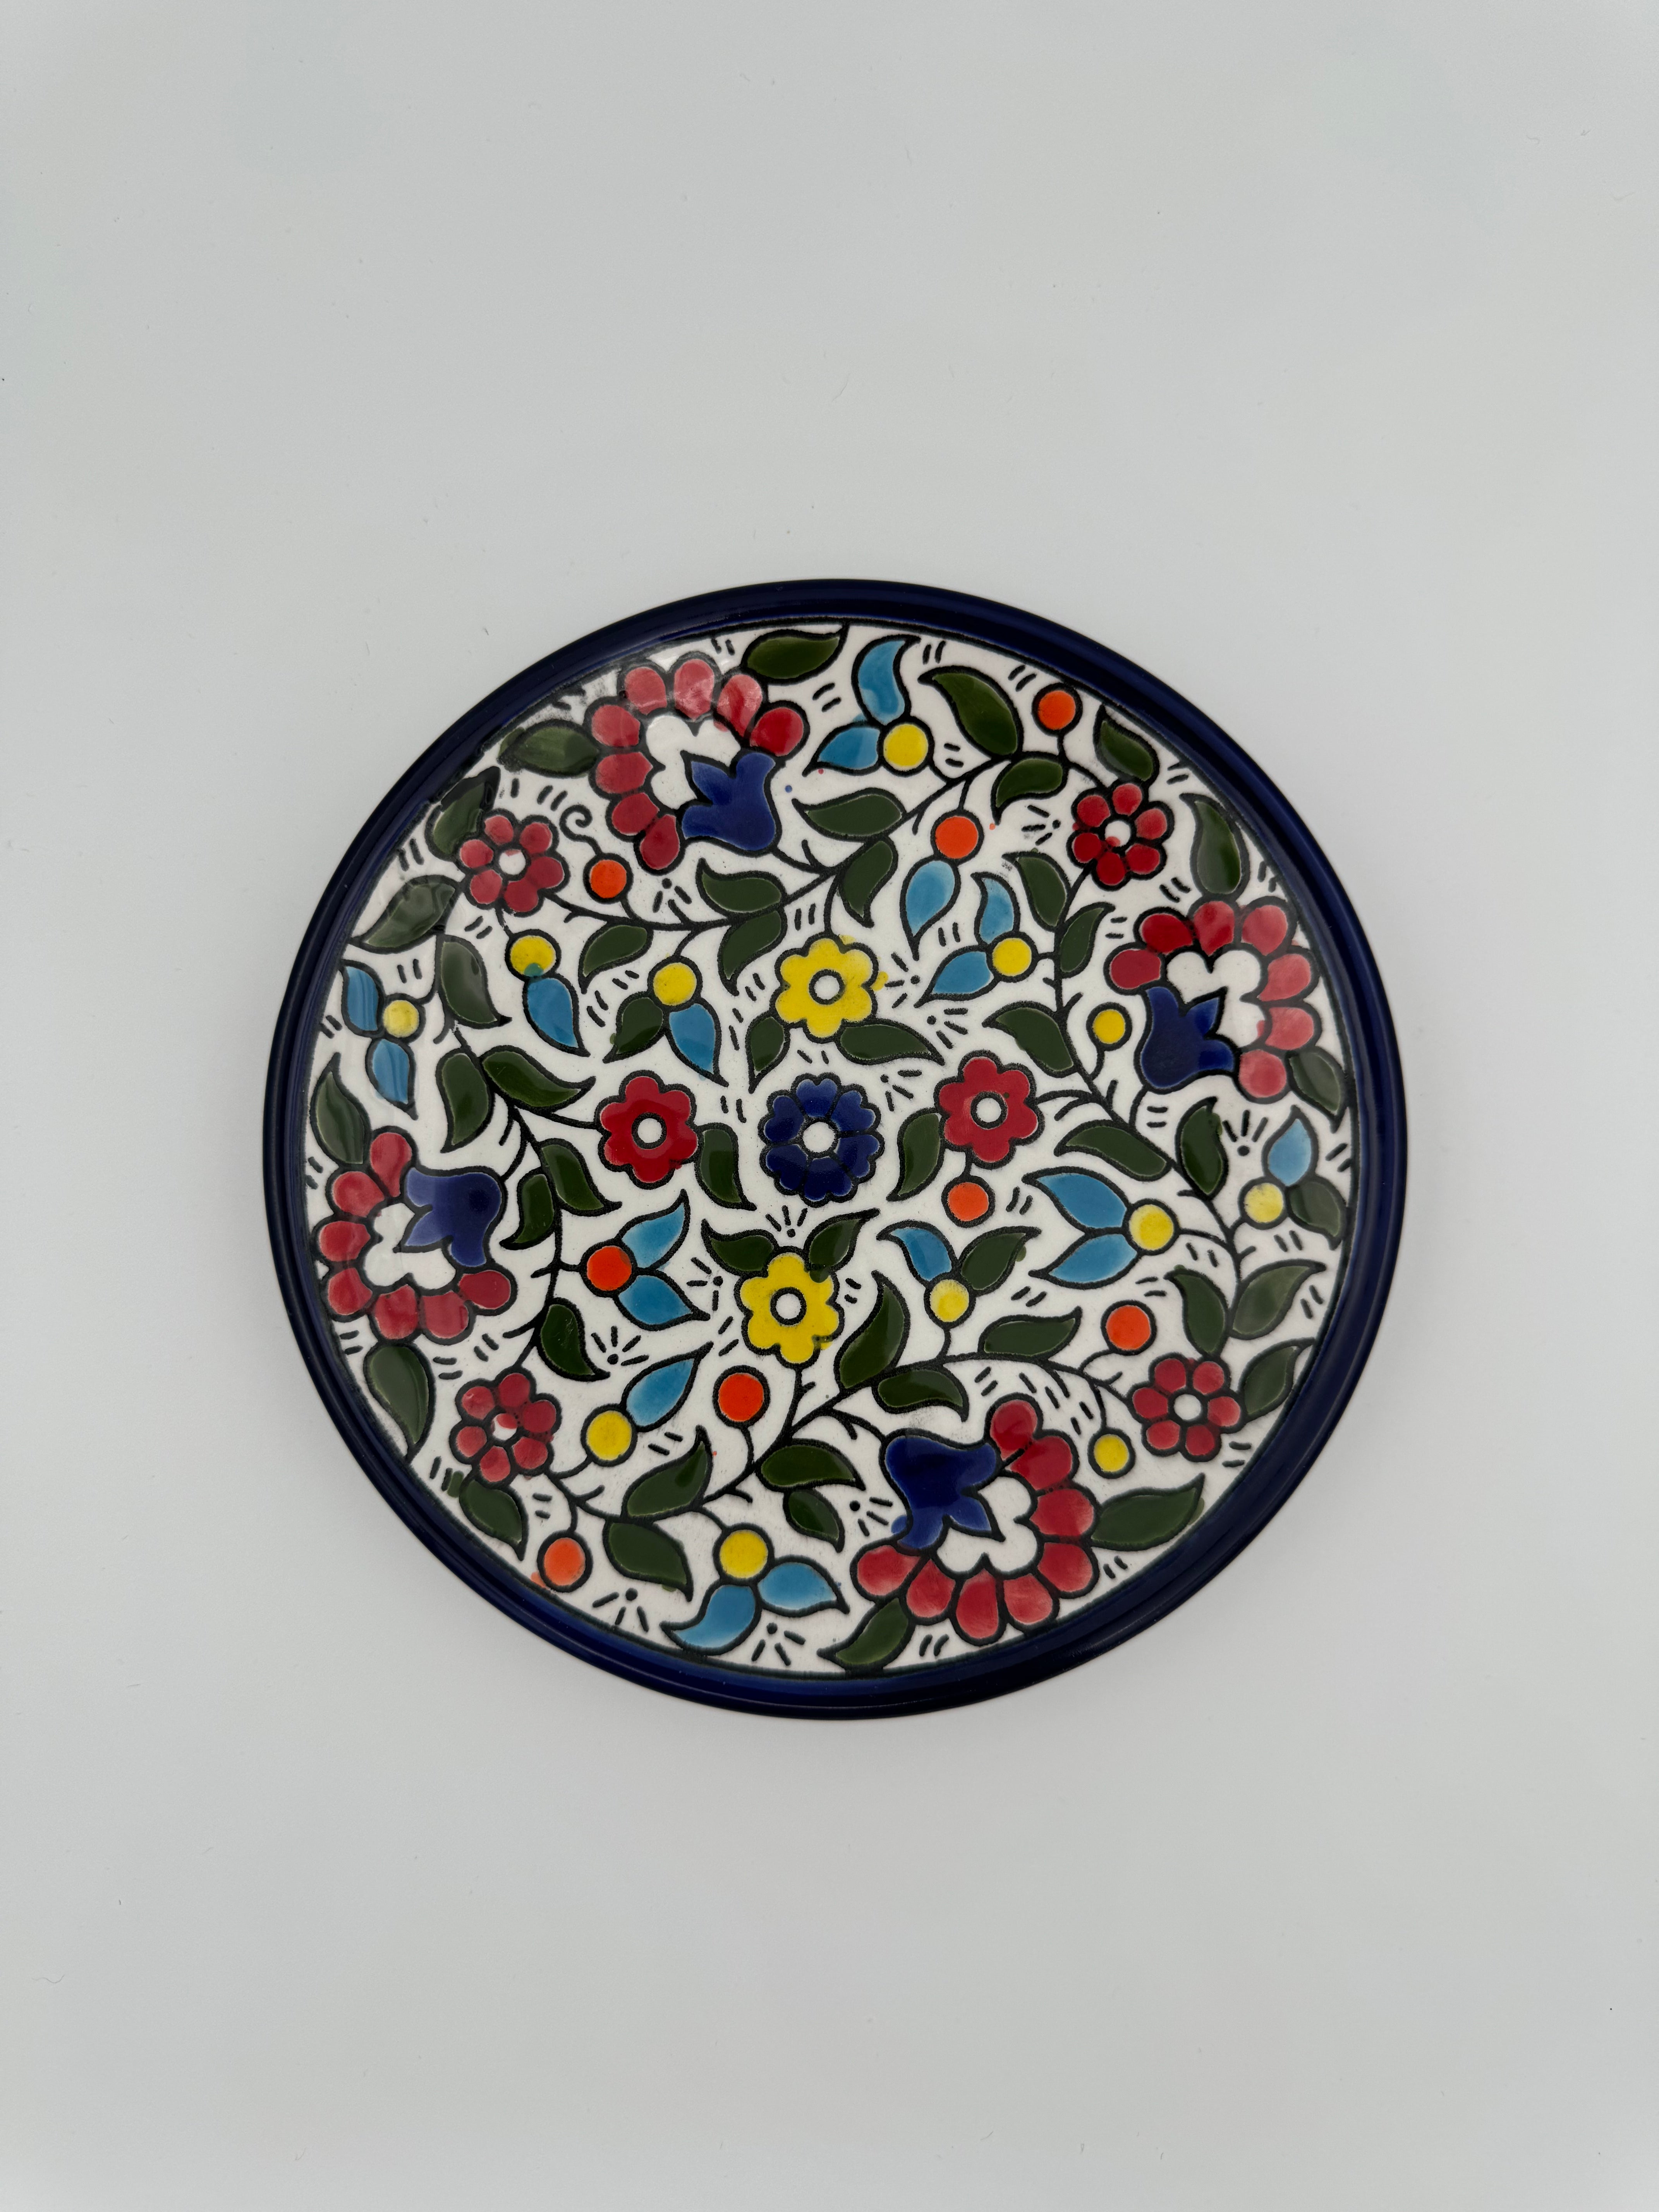 Al-Khalil Plate